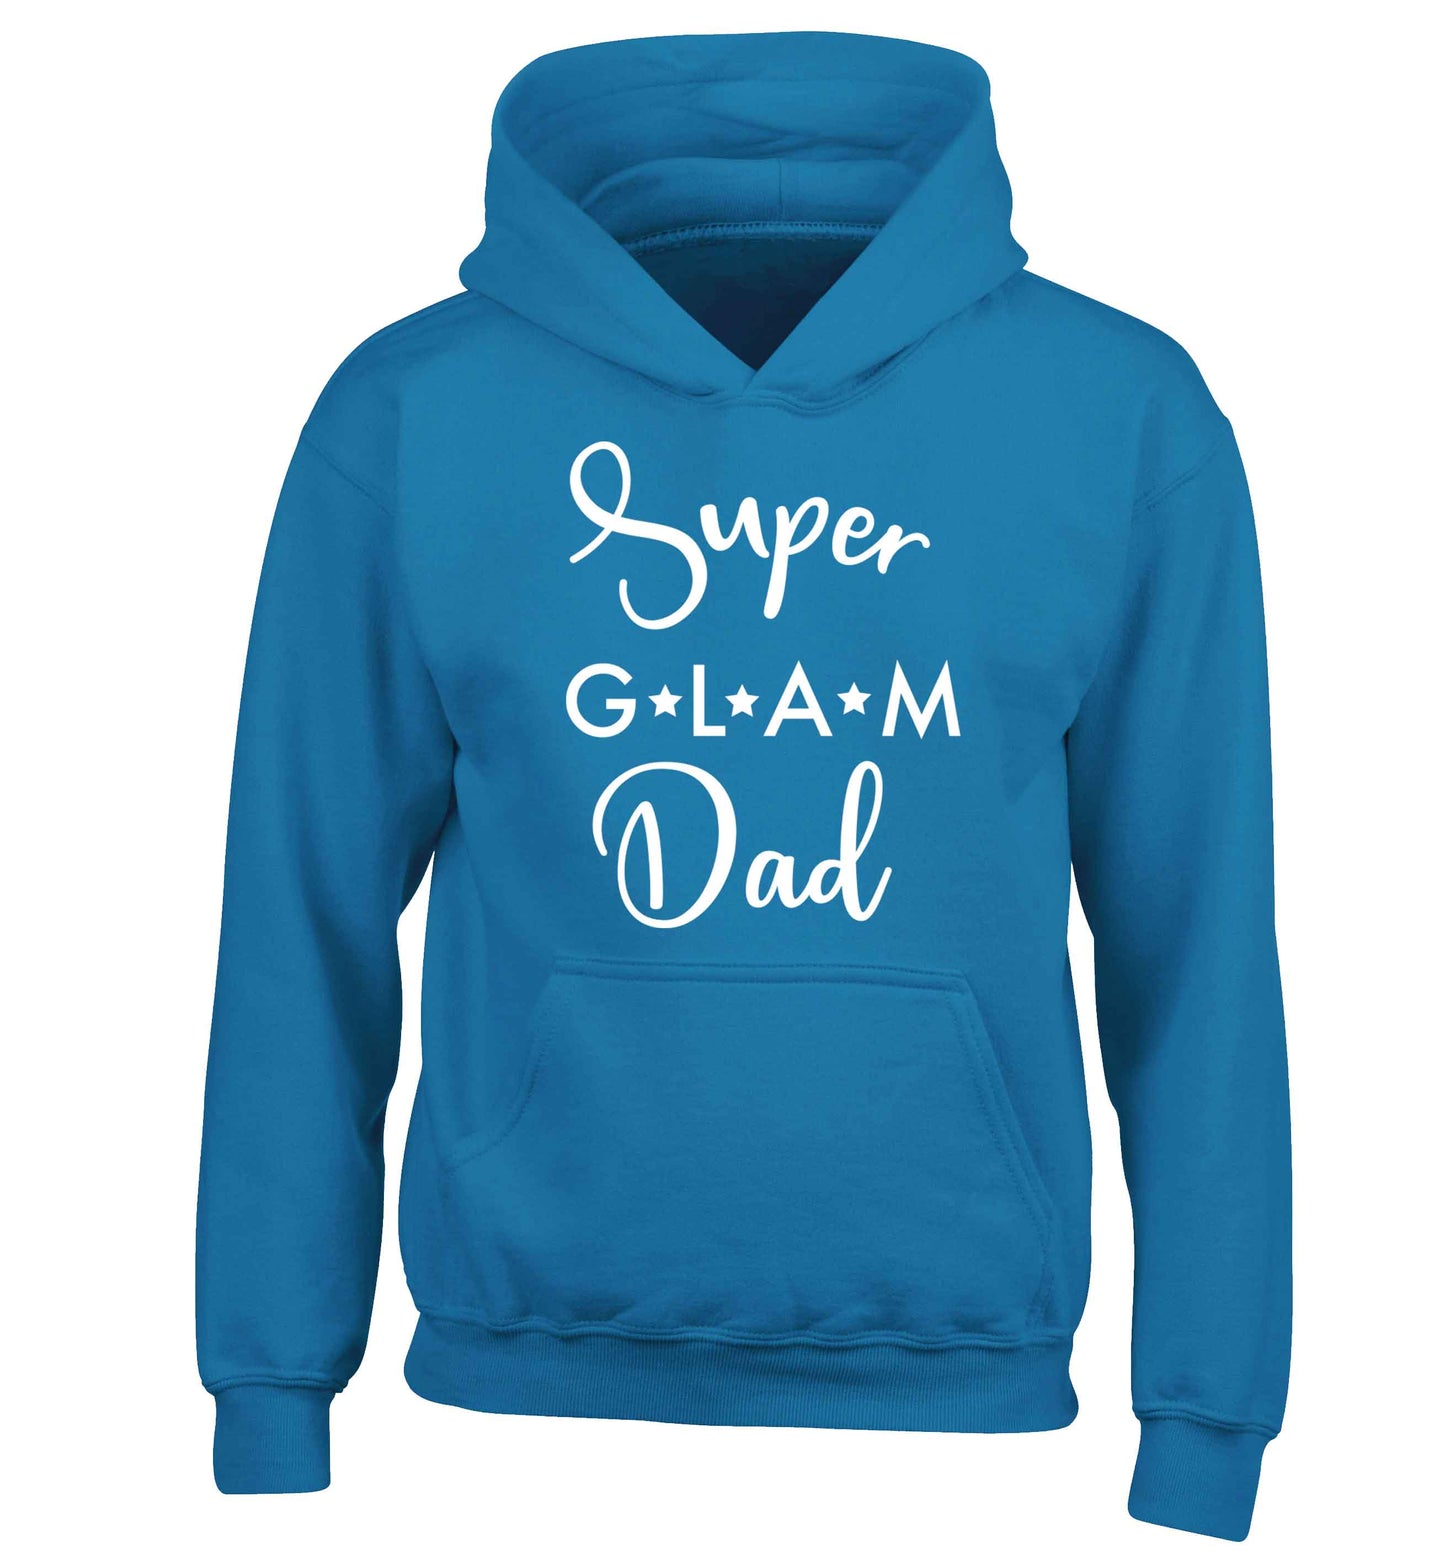 Super glam Dad children's blue hoodie 12-13 Years